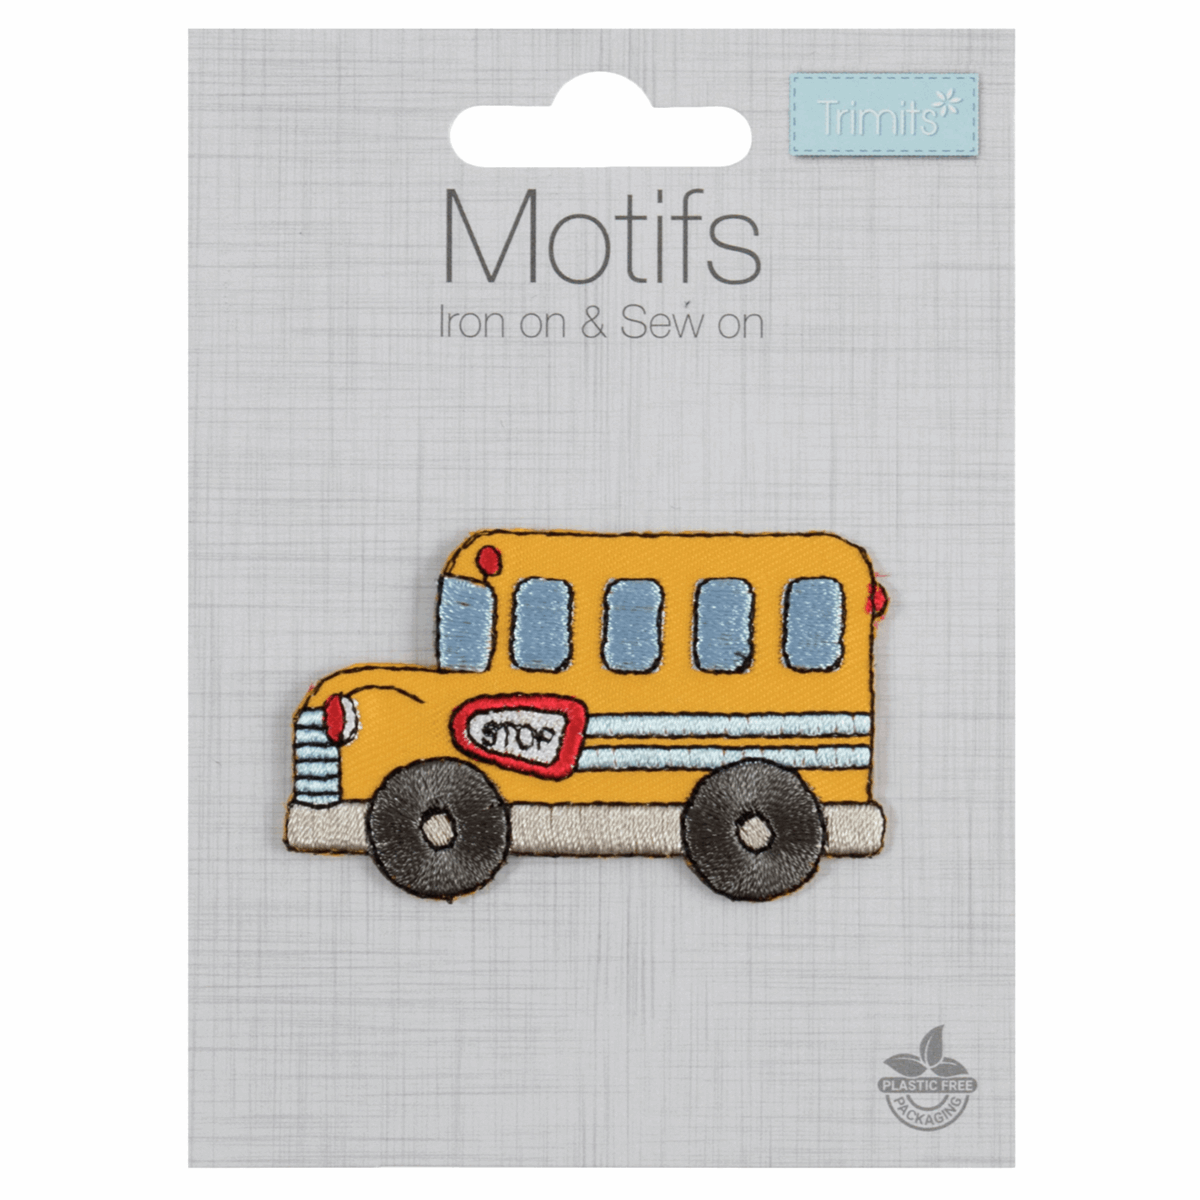 School Bus - Iron -On & Sew-On Motifs